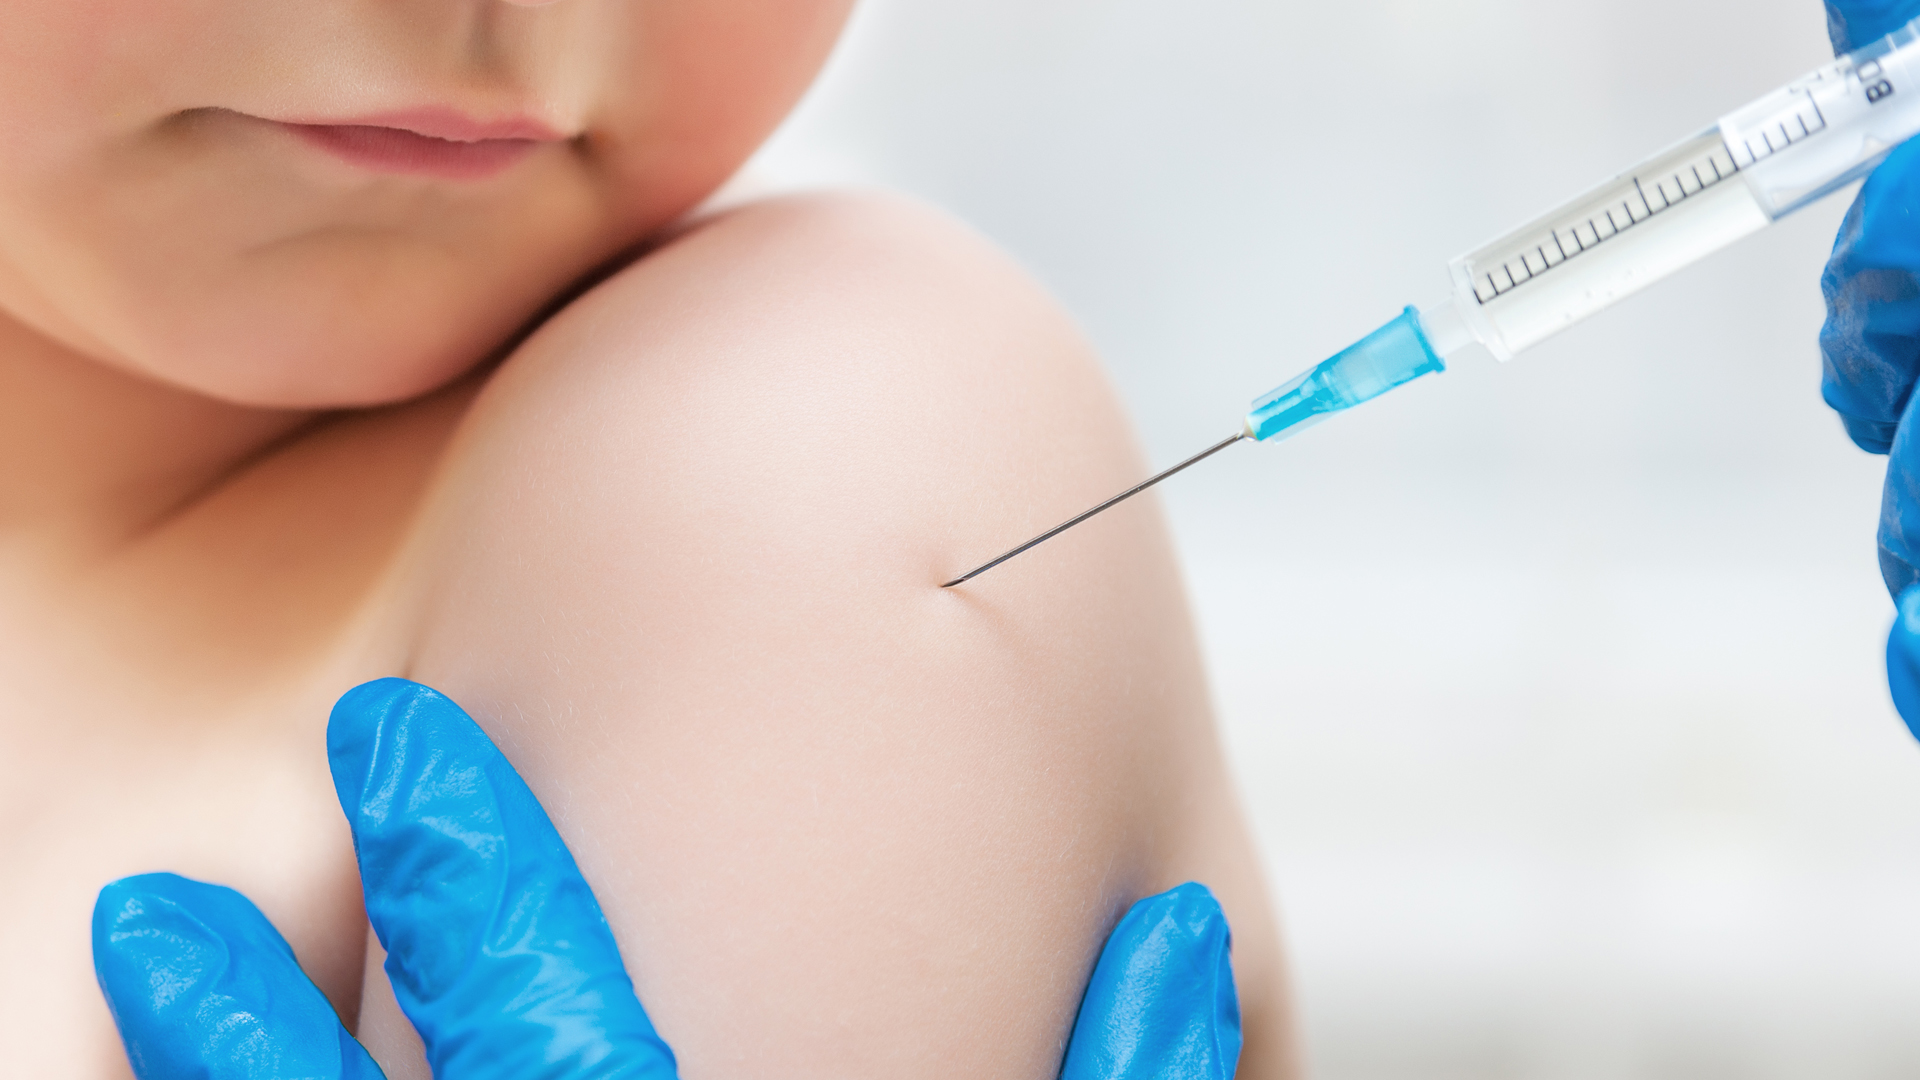 El laboratorio Pfizer antes de fin de año ultima un ensayo clínico de  Fase II / III para disponer de una vacuna contra el COVID-19 de plataforma genética (ARN mensajero) para niños desde 11 años hasta  bebés de 6 meses.  Infobae entrevistó al investigador líder.  (iStock)